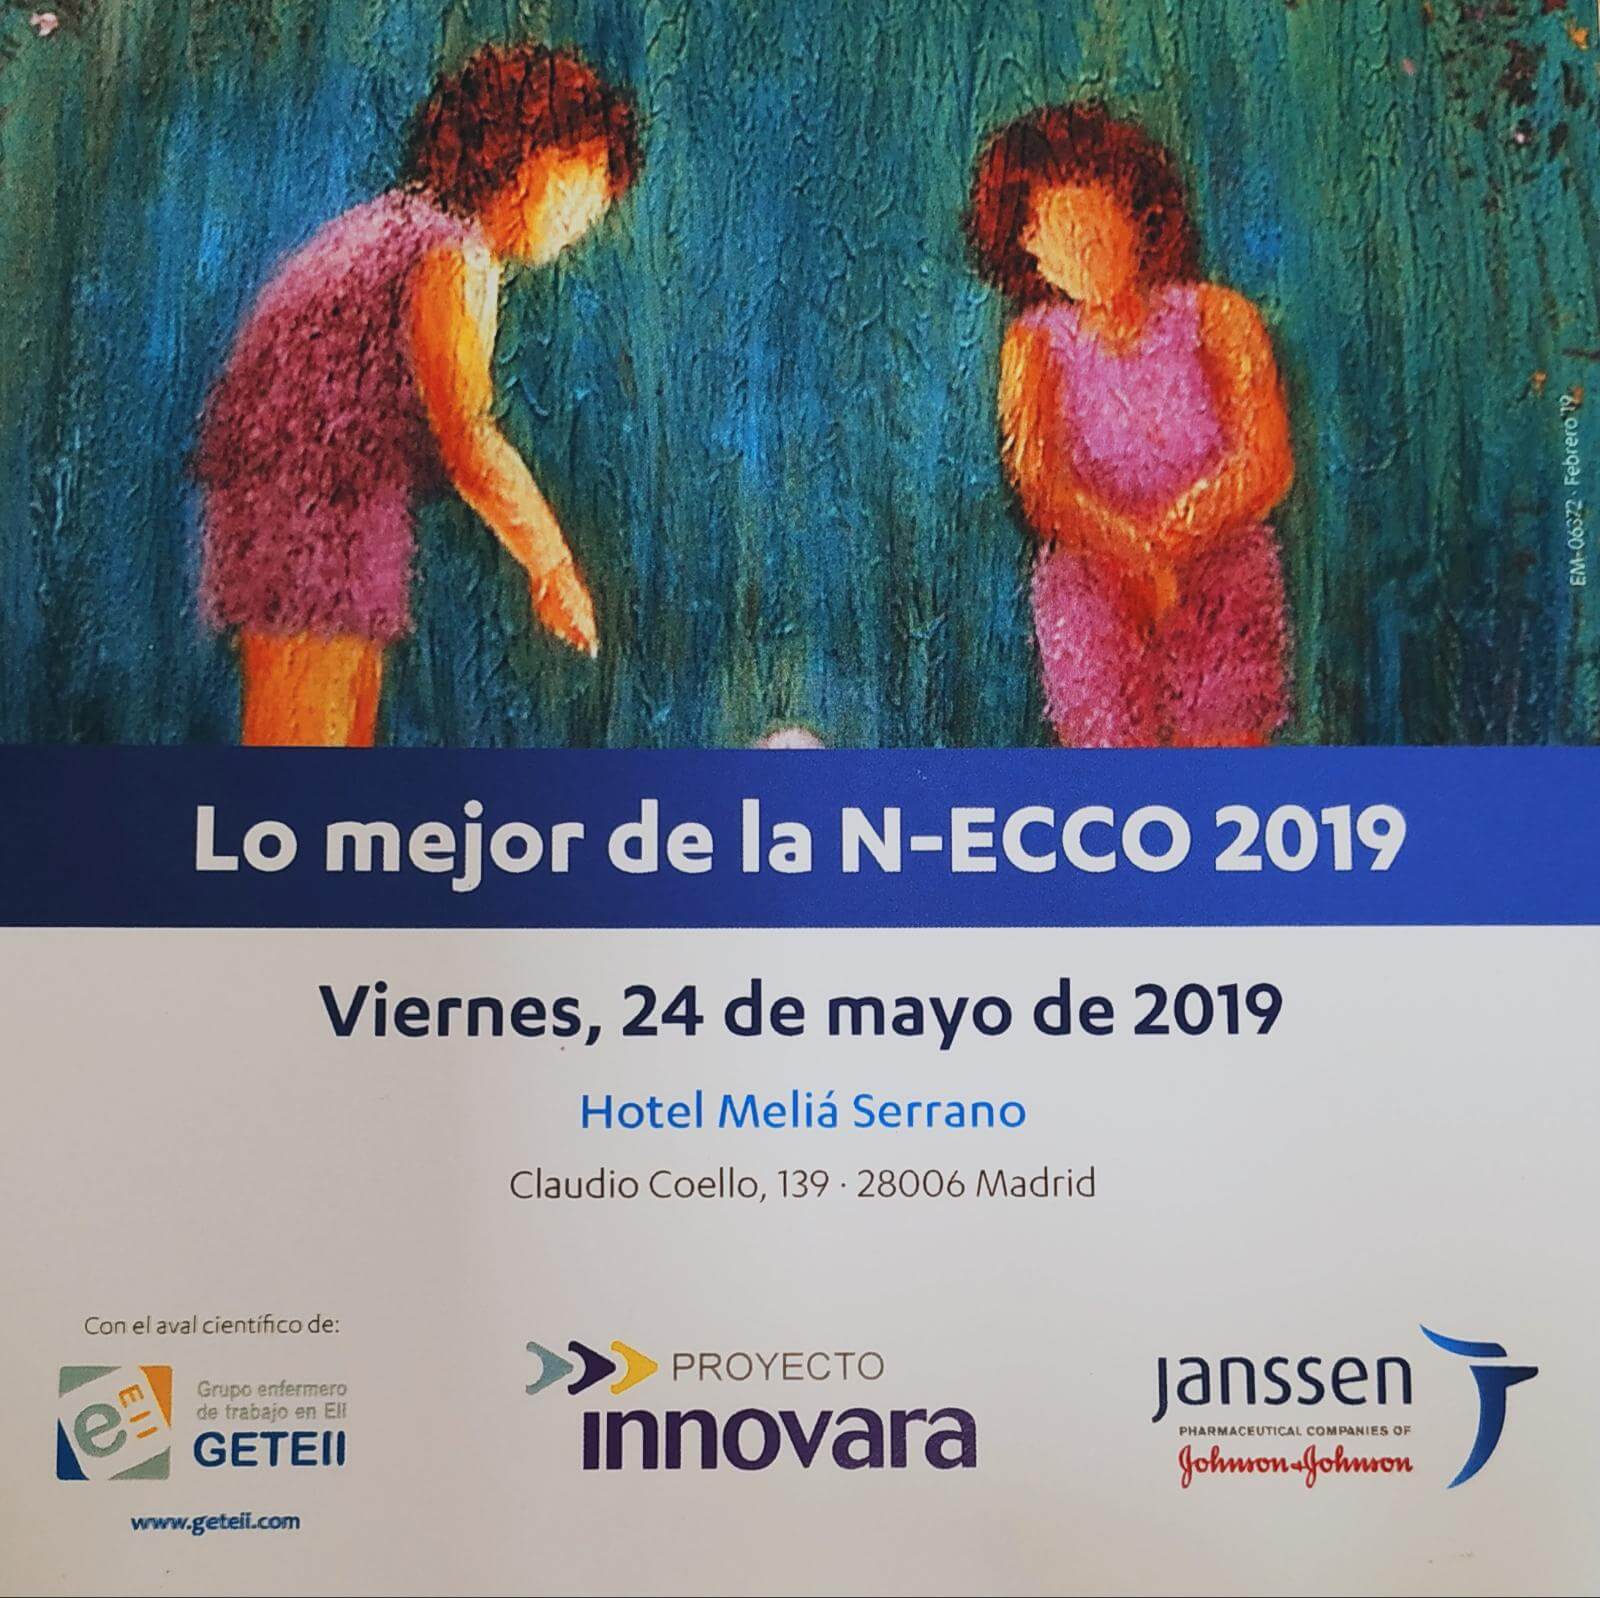 II Jornada enfermera nacional - Post-NECCO 2019